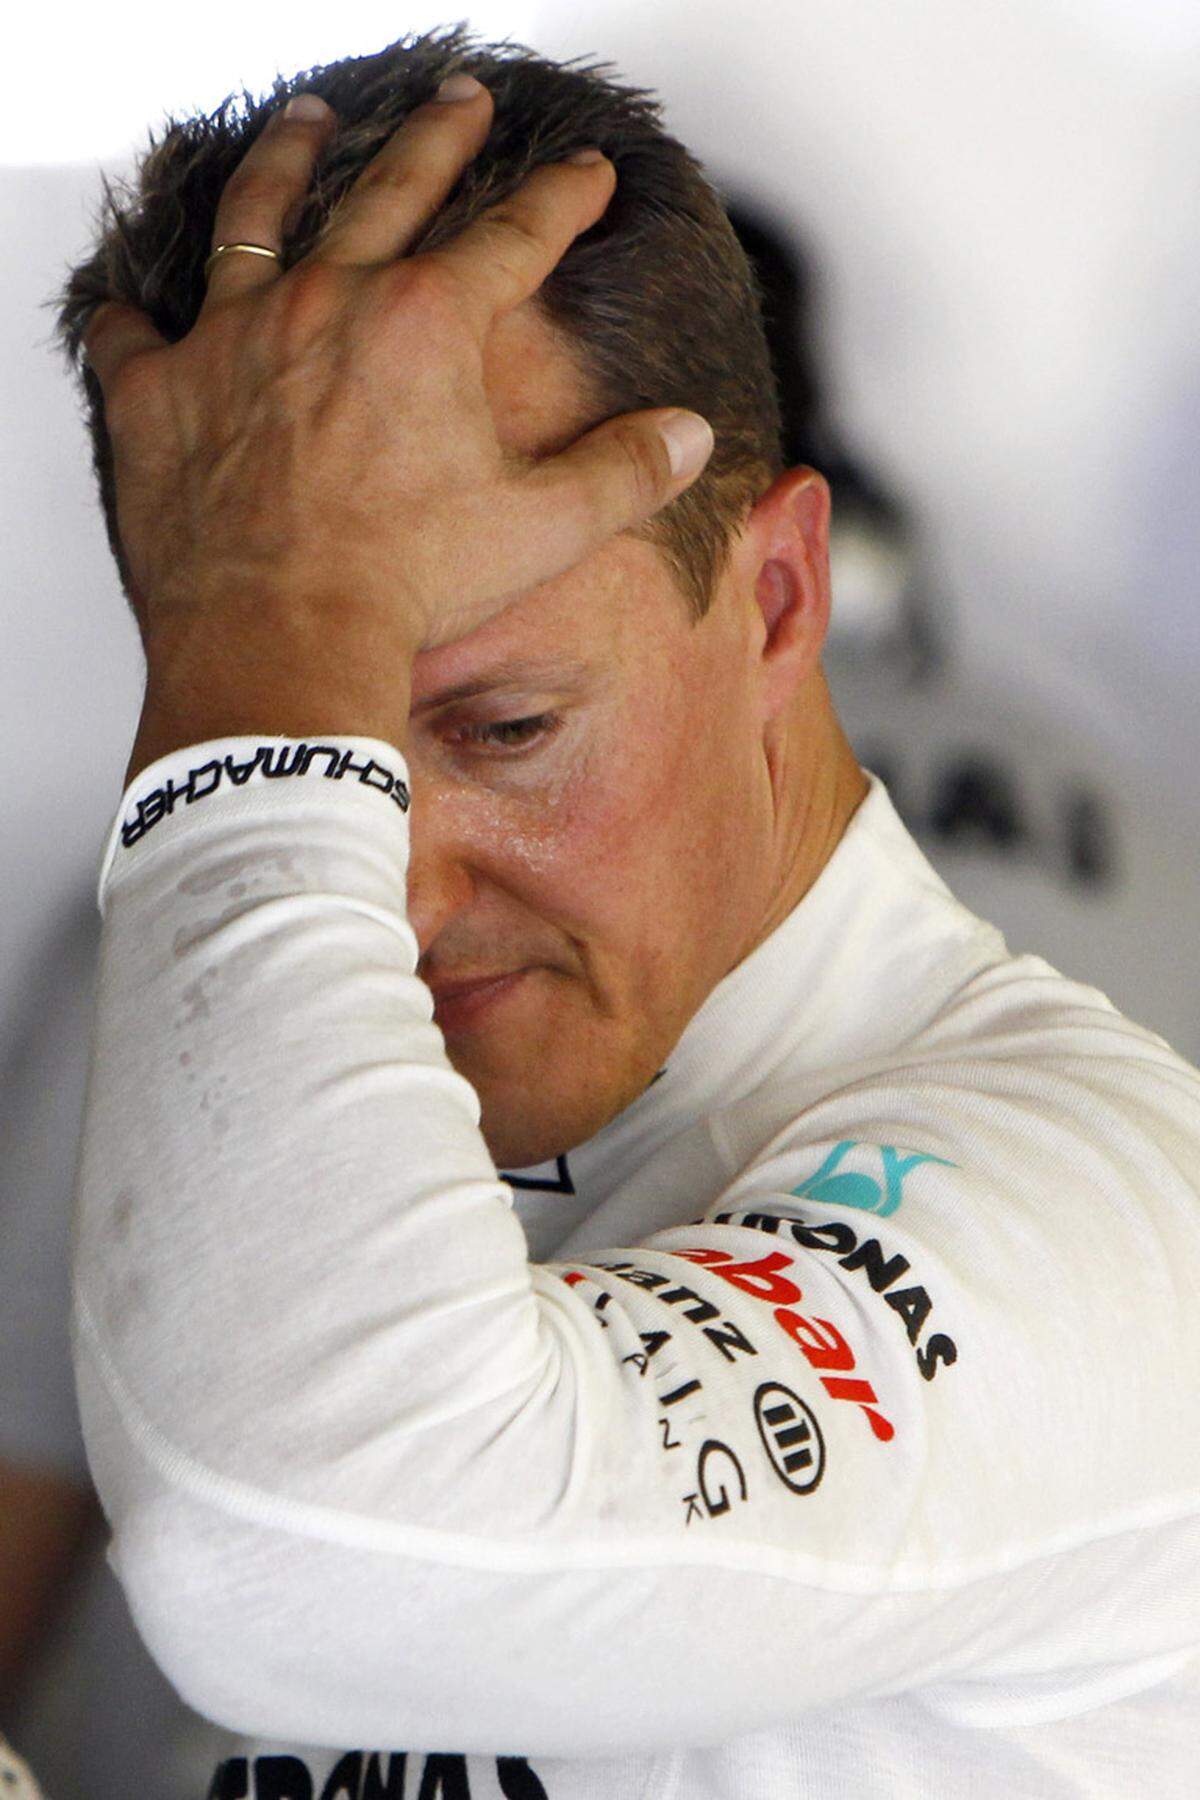 Im September 2006 hatte der Rekordweltmeister der Formel 1 genug: Michael Schumacher gab sein Karriereende bekannt. 2010 überkam den Deutschen jedoch die unbändige Lust, ein wenig am eigenen Denkmal zu sägen und er feierte für das Nachzügler-Team von Mercedes ein Comeback. Die magere Ausbeute in insgesamt drei Jahren: Ein dritter Platz beim Grand Prix von Europa im Jahr 2012.